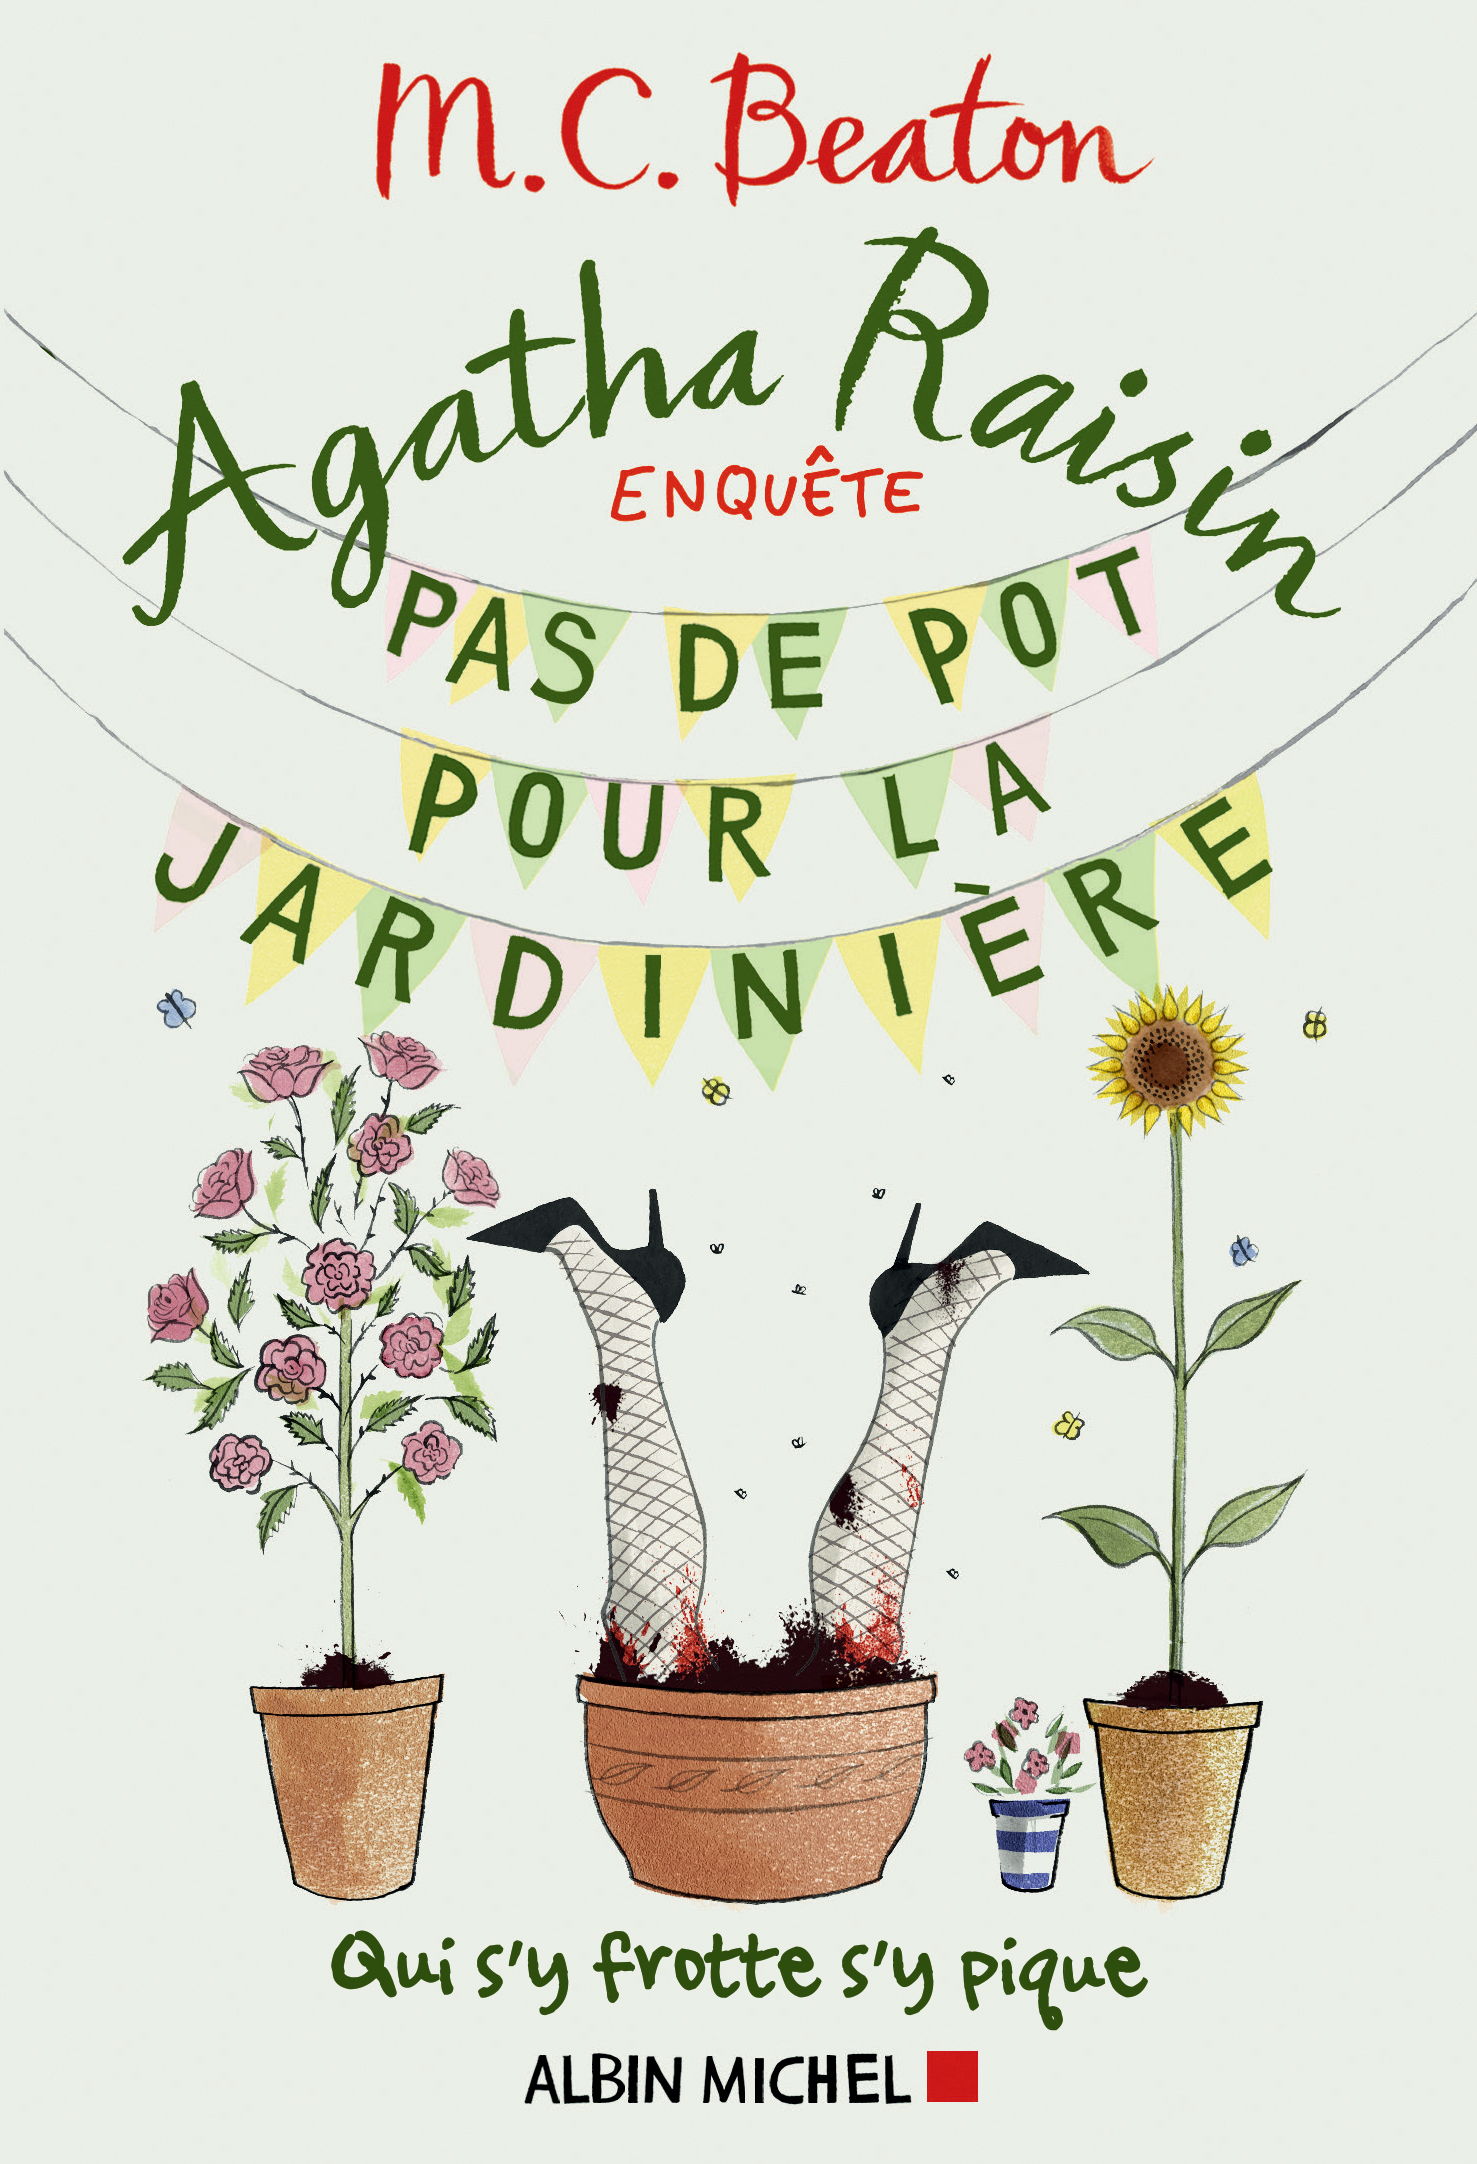 Couverture du livre Agatha Raisin enquête 3 - Pas de pot pour la jardinière